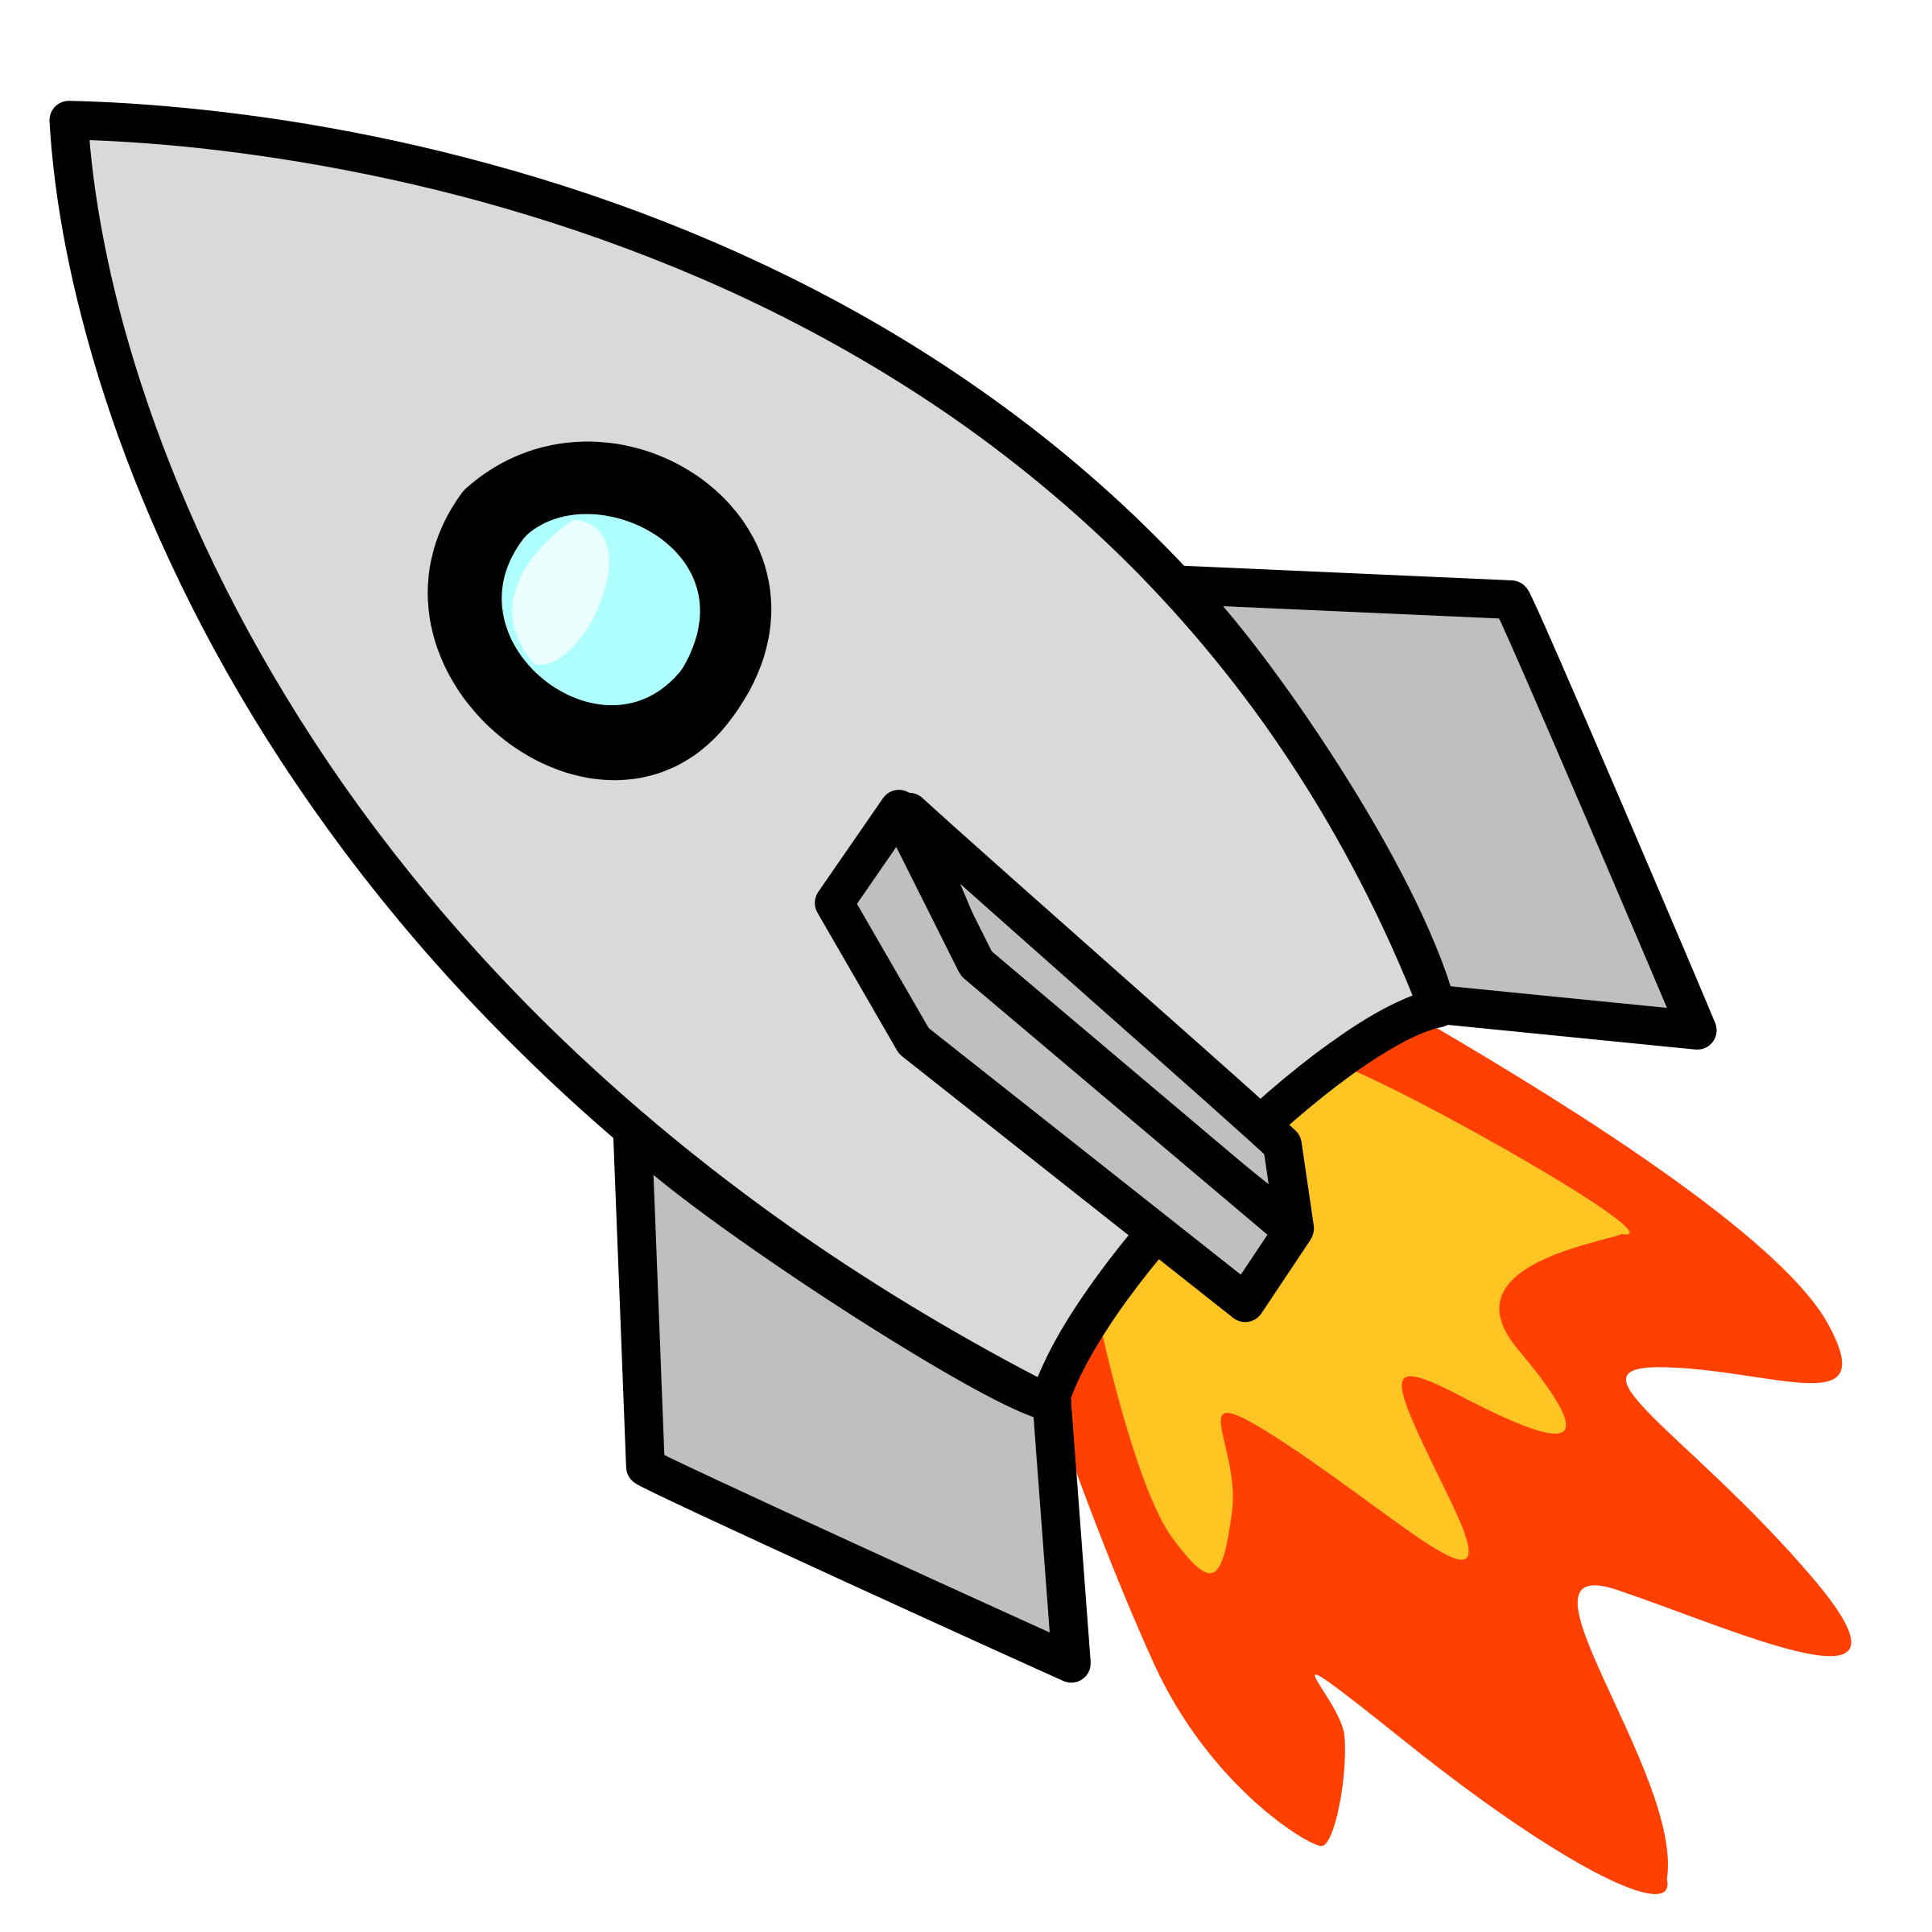 Rocket Cartoon Images | Free Download Clip Art | Free Clip Art ...